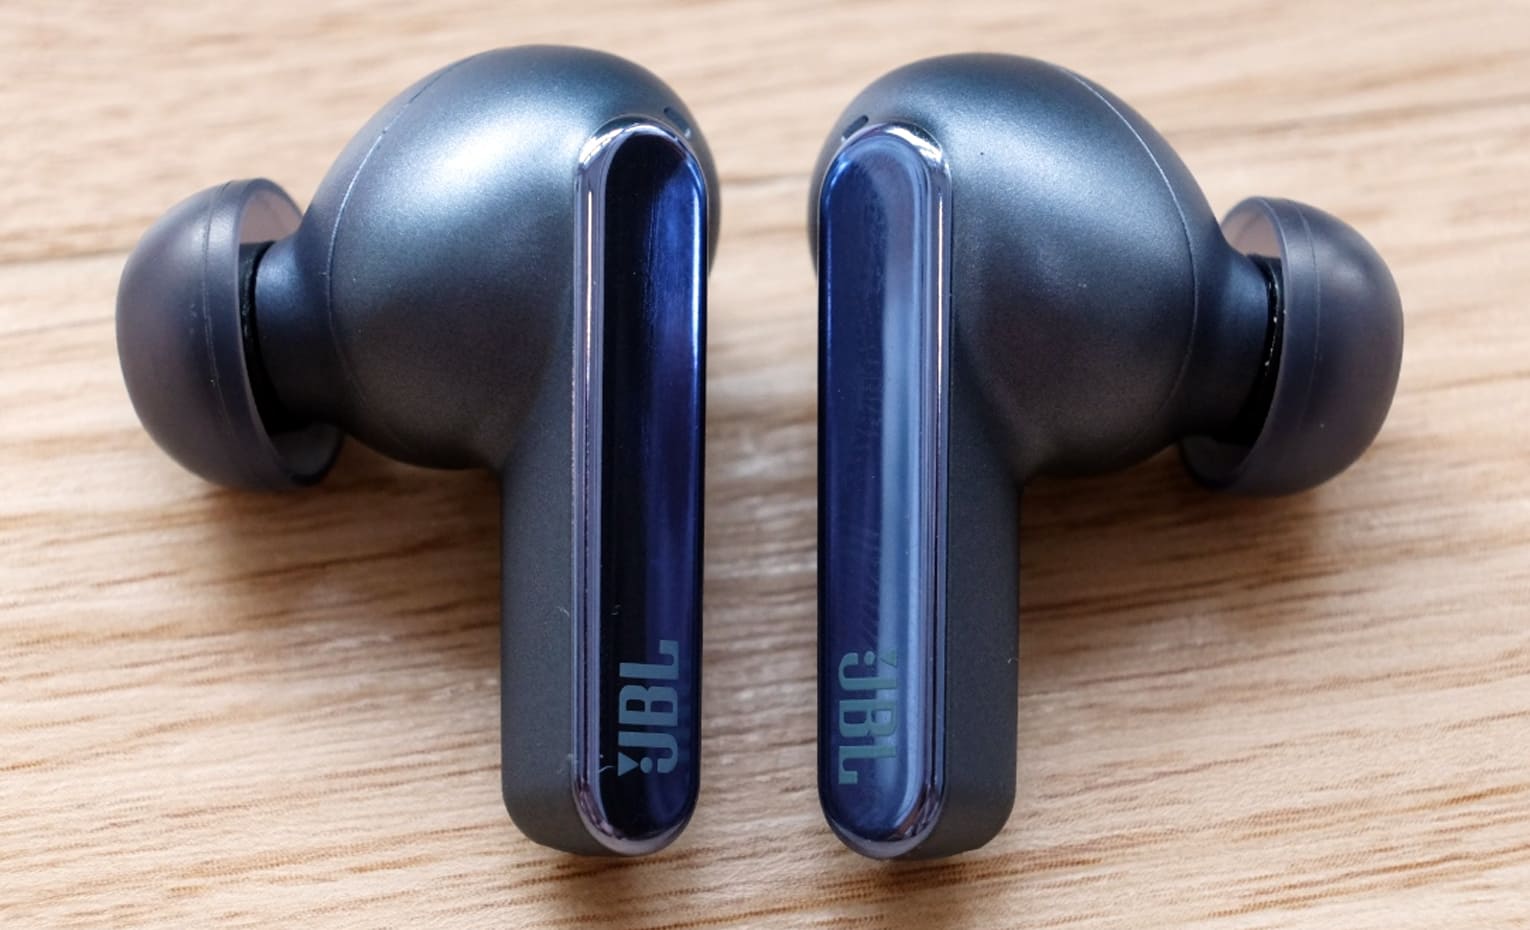 خرید هدفون مناسب برای پادکست گوش دادن | Perfect headphones for listening to podcasts